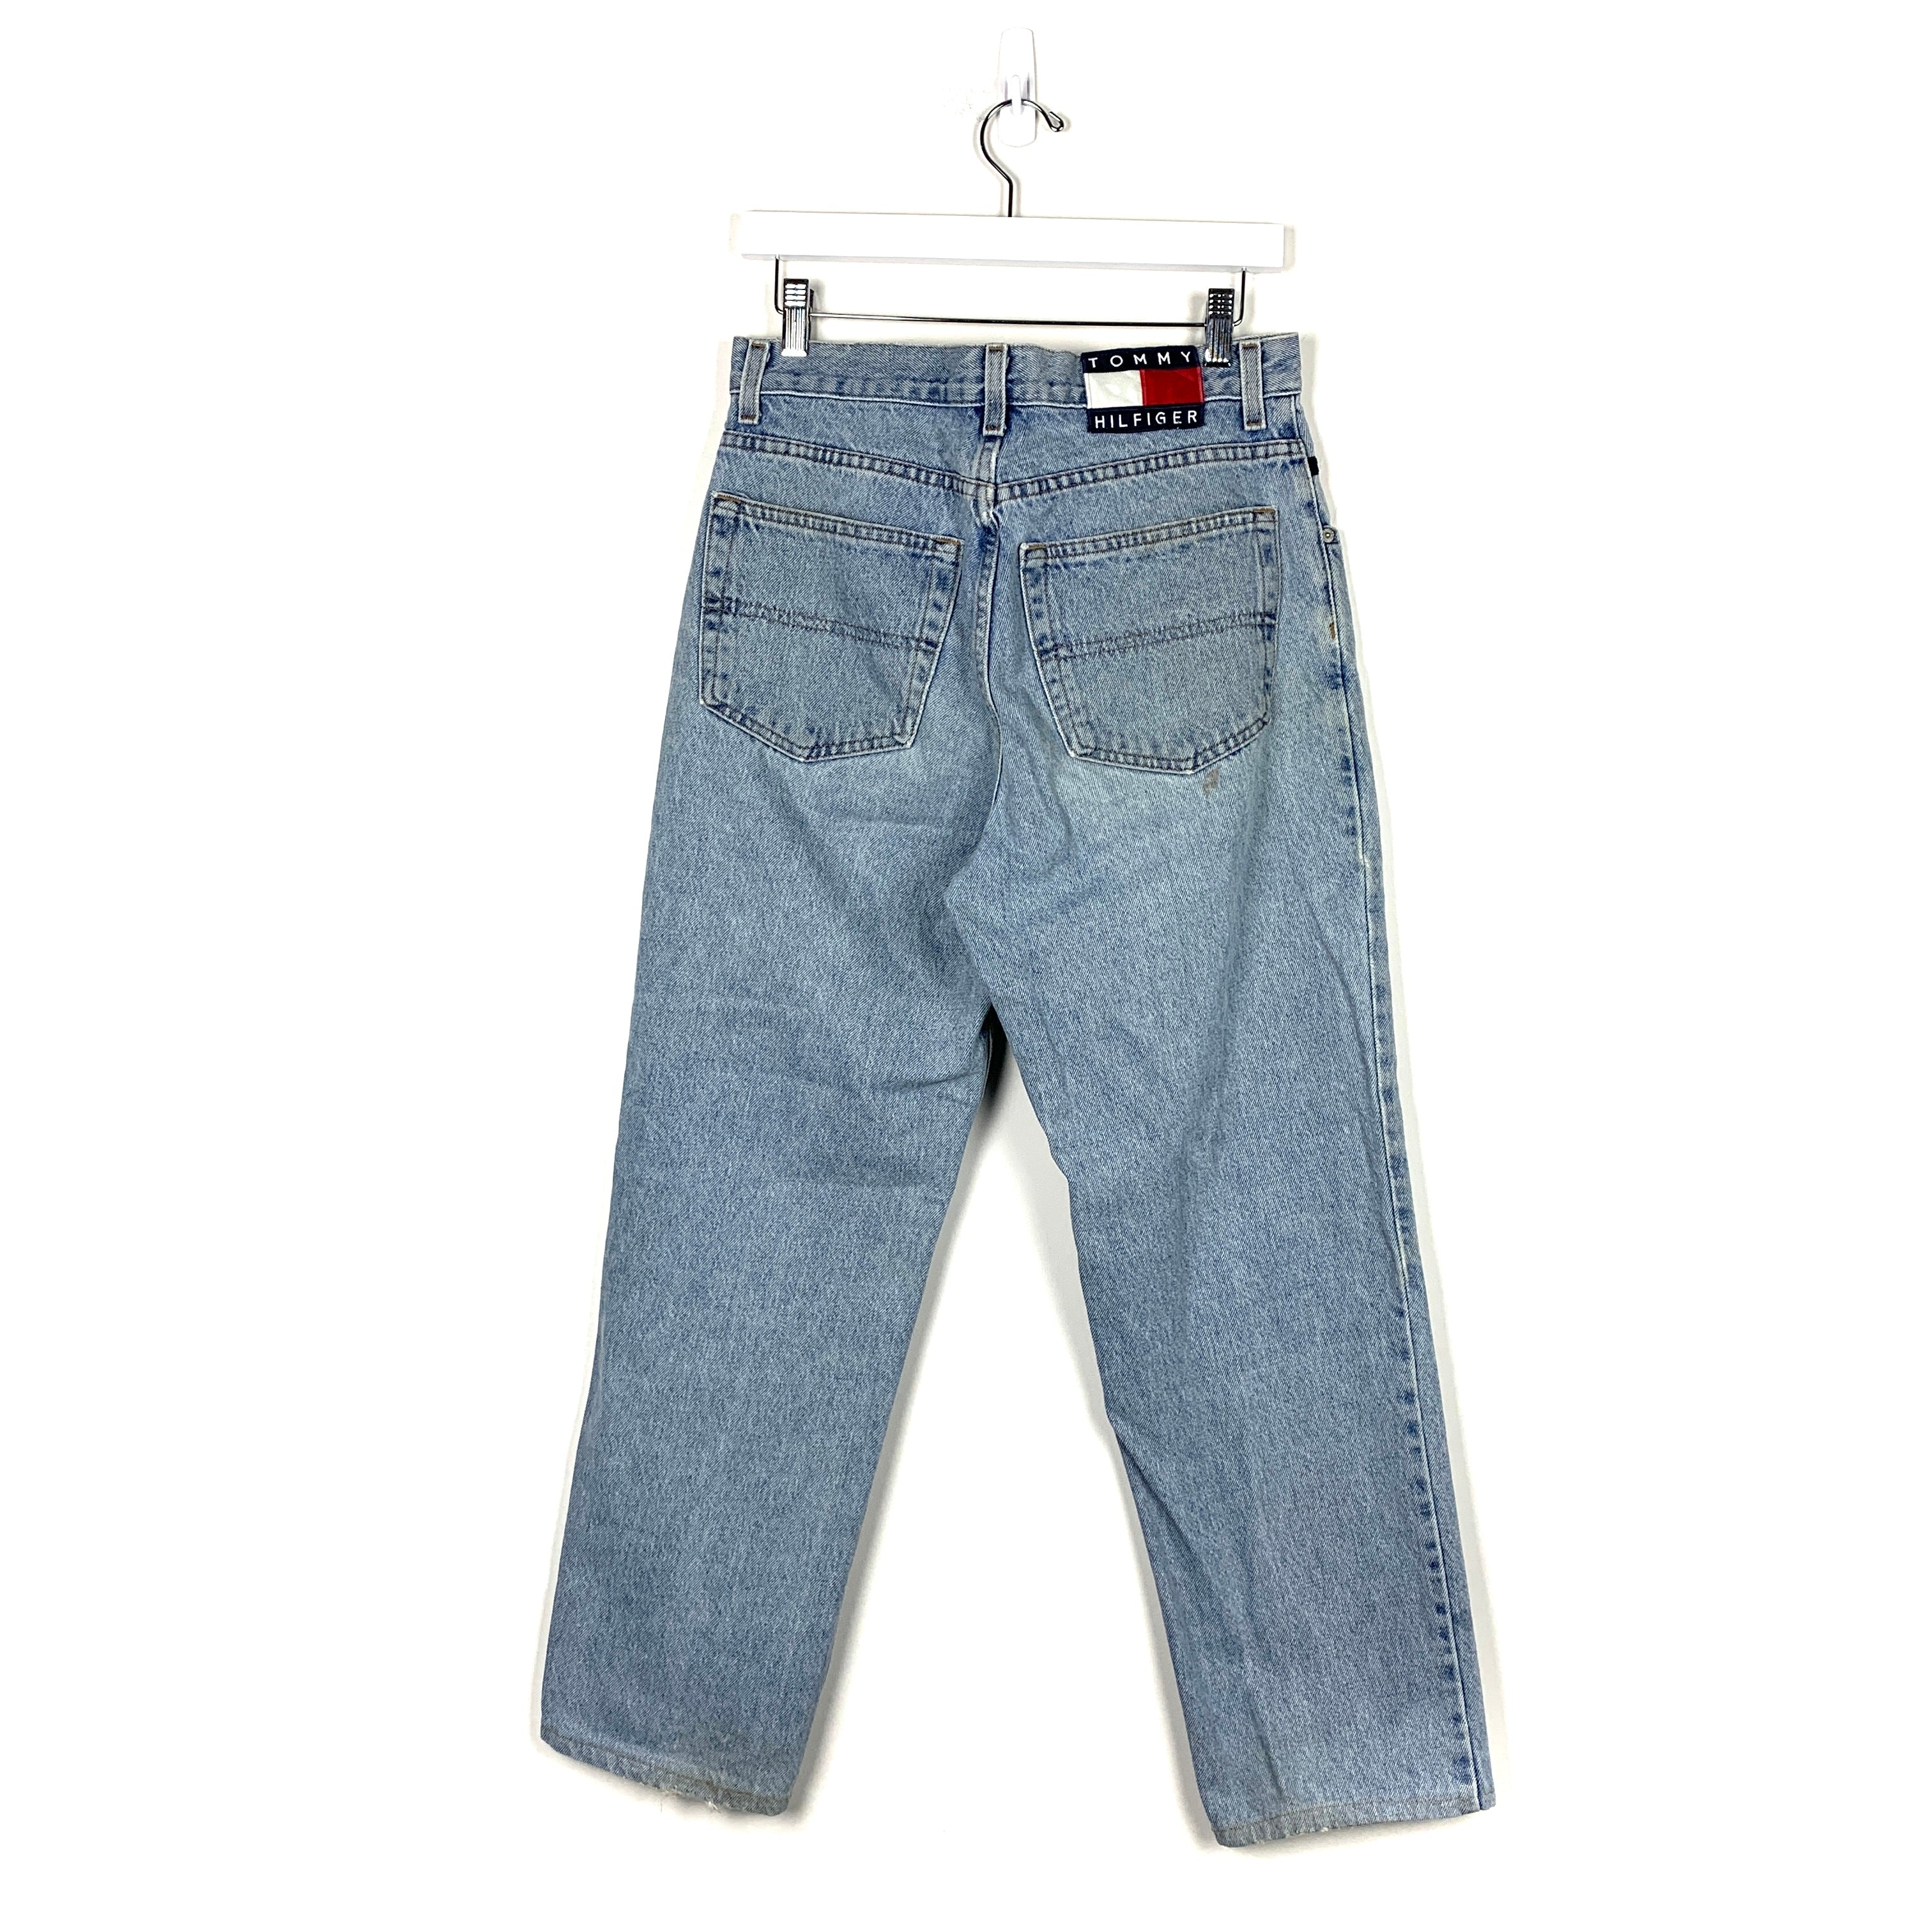 Vintage Tommy Hilfiger Jeans - Men's 30/30